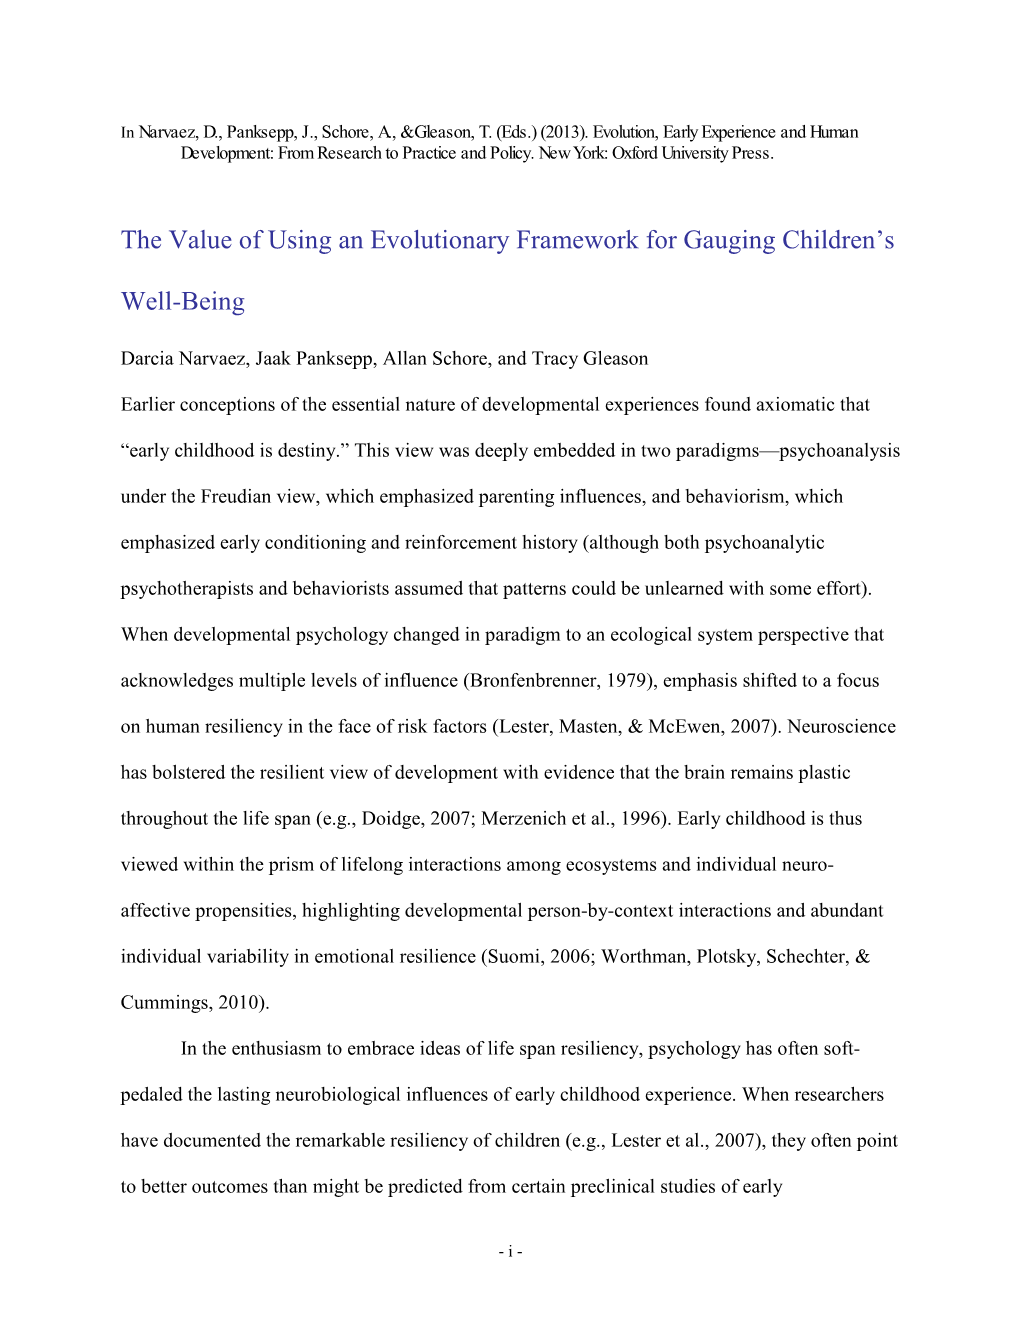 The Value of Using an Evolutionary Framework for Gauging Children's